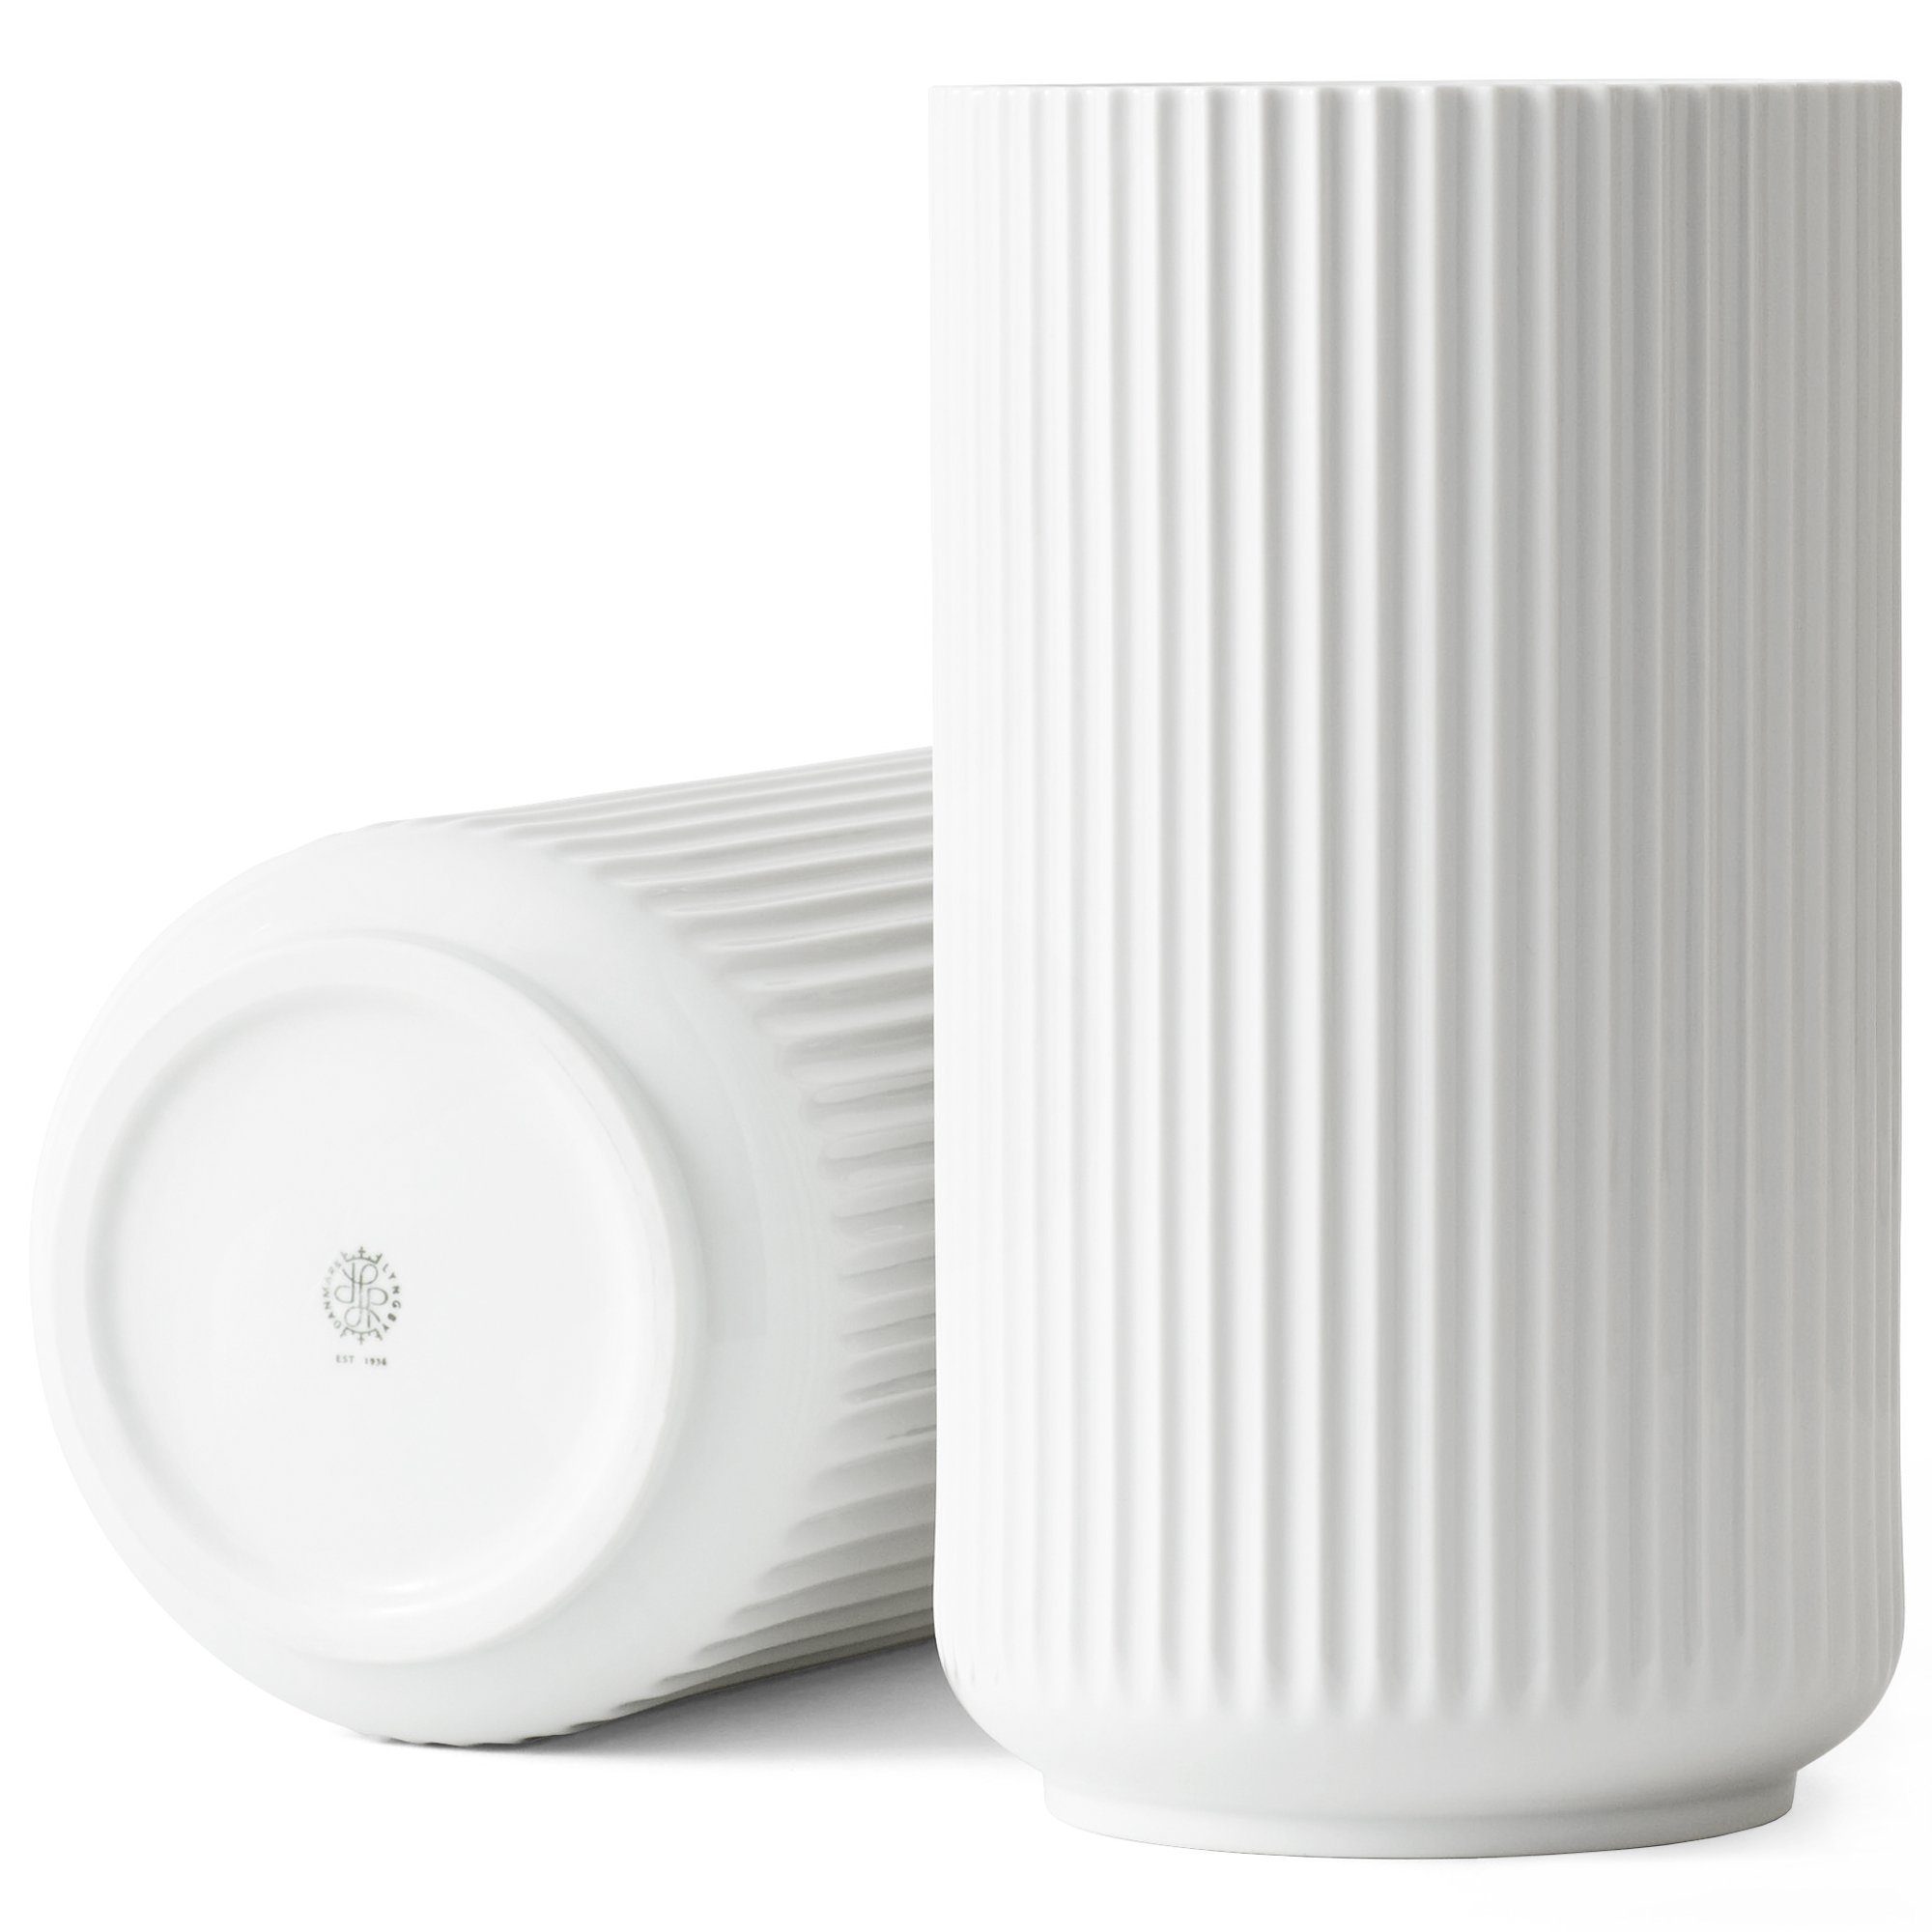 Lyngby Porcelæn Tischvase »Design Vase aus Porzellan in Weiß; Ikonische  Porzellanvase in Säulenform mit Rillen-Struktur« online kaufen | OTTO